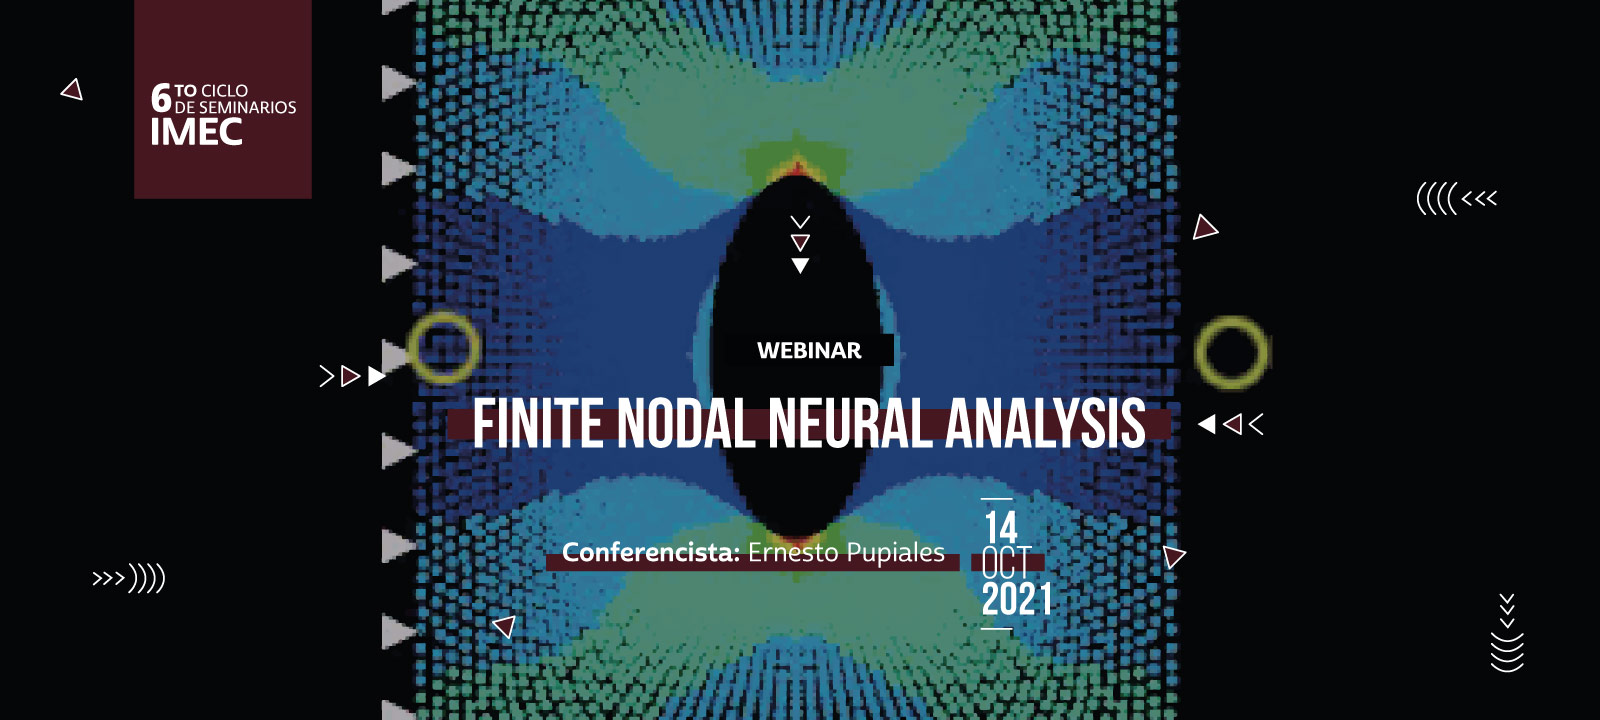 Ernesto hablará sobre la predicción de campos de esfuerzos usando redes neuronales